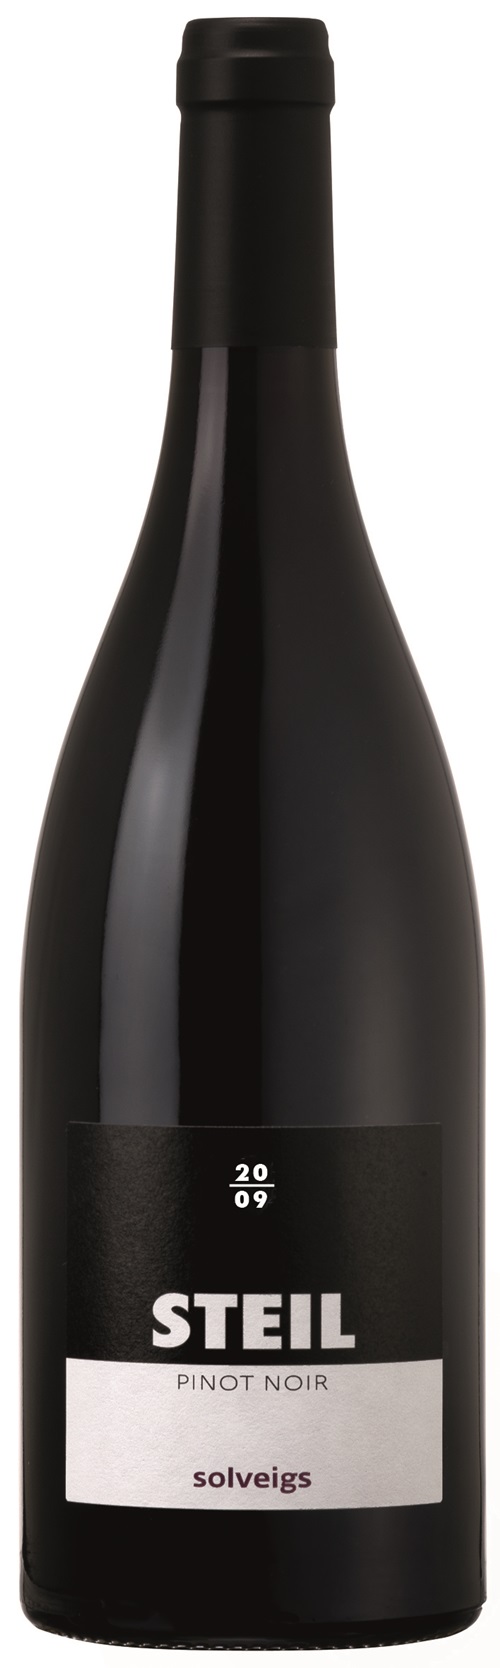 Steil-Solveigs-Pinot Noir „STEIL - ist ein ausdrucksstarker Pinot Noir von kräftig-eleganter Art. Ein Individuum - je nach Jahrgang und Einzelparzelle mit mehr oder weniger intensiven rauchig-erdigen Aromen des roten Schiefers oder auch mal mehr Beerenfrucht. auch länger“. Solveigs Winzer Jens Heinemeyer